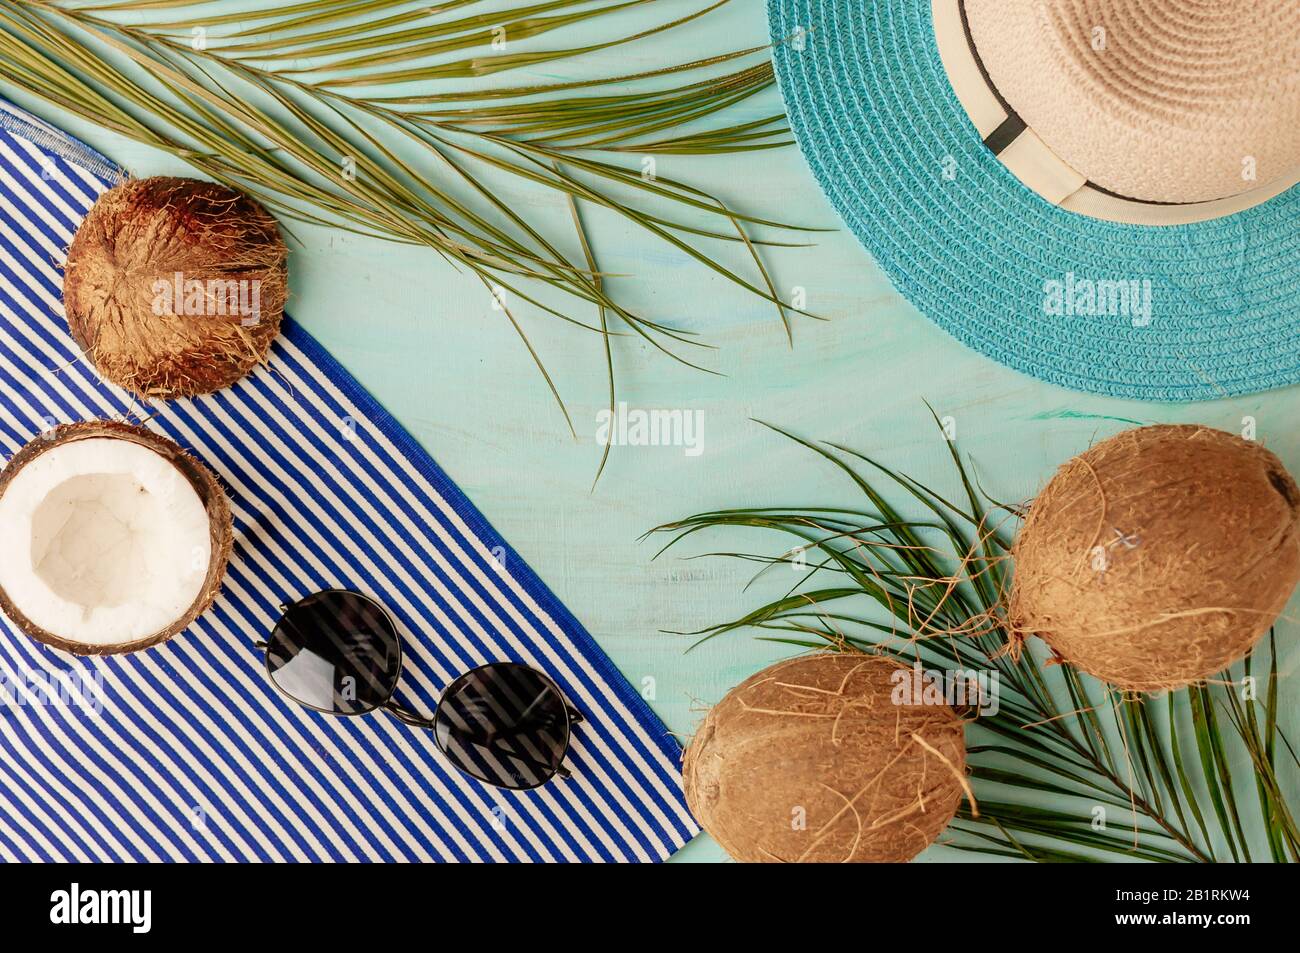 Composizione o layout estivo. Foglie di palma tropicale, cappello, bicchieri, telo mare, cocco su uno sfondo di verde mare. Il concetto della stagione estiva Foto Stock